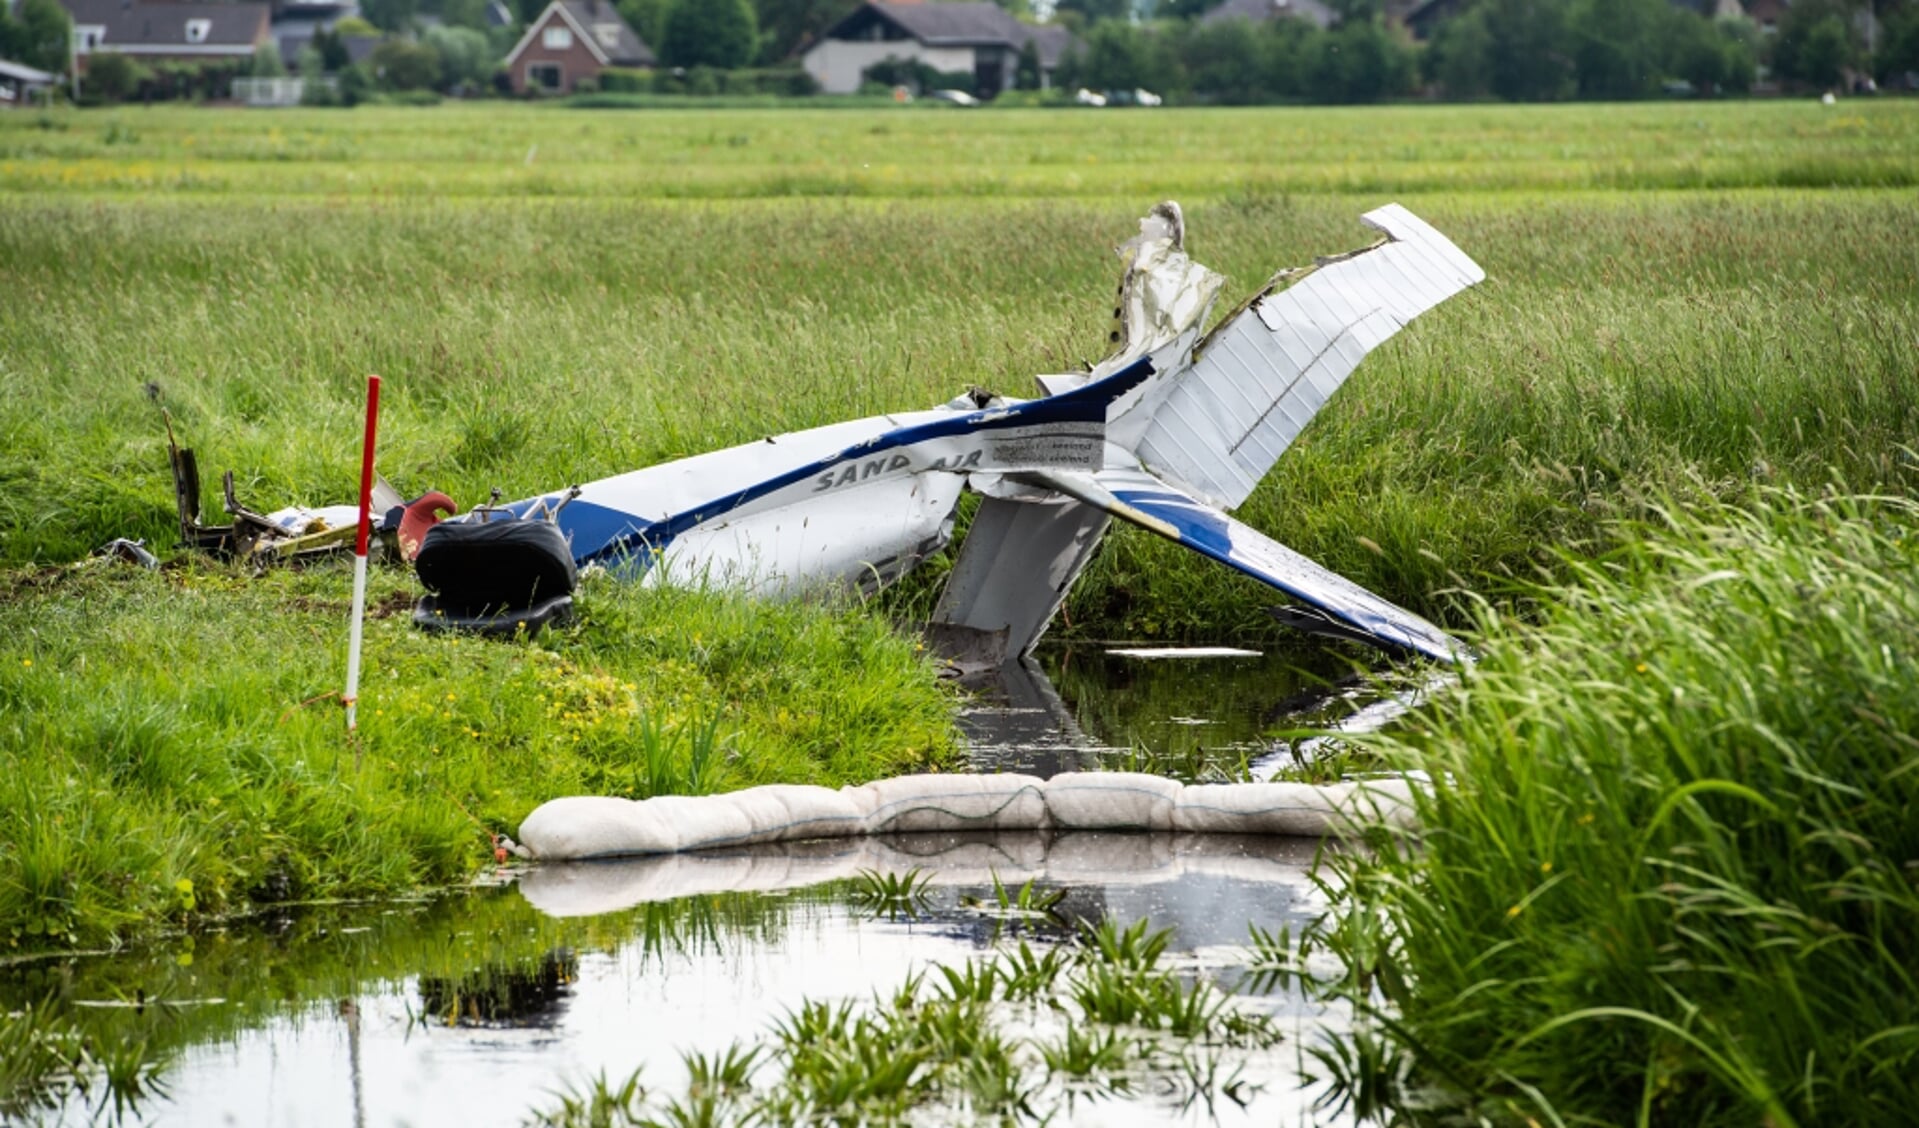 • Het wrak van de Cessna C172 in een weiland langs de Benedenheulseweg in Stolwijk.